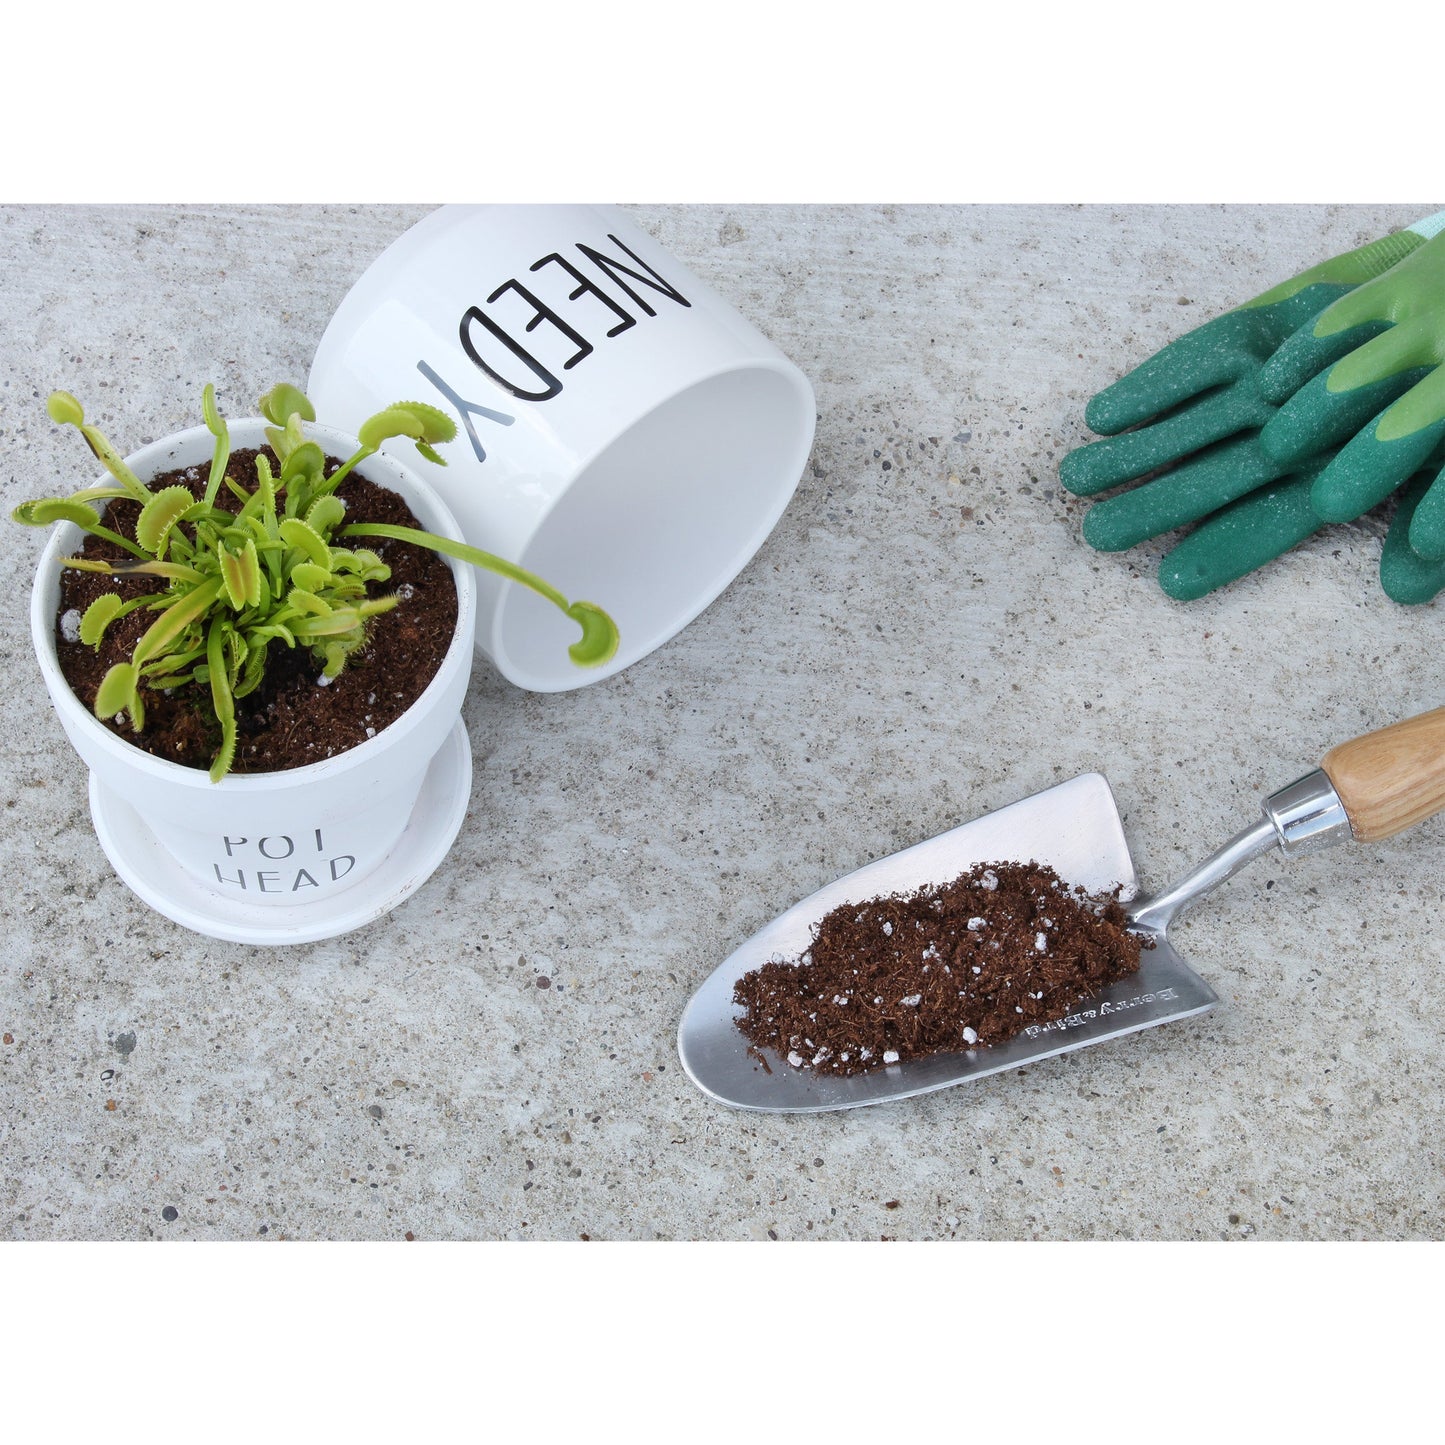 Carnivorous Plant Potting Soil Mix (4 Quarts) - SSKIT146